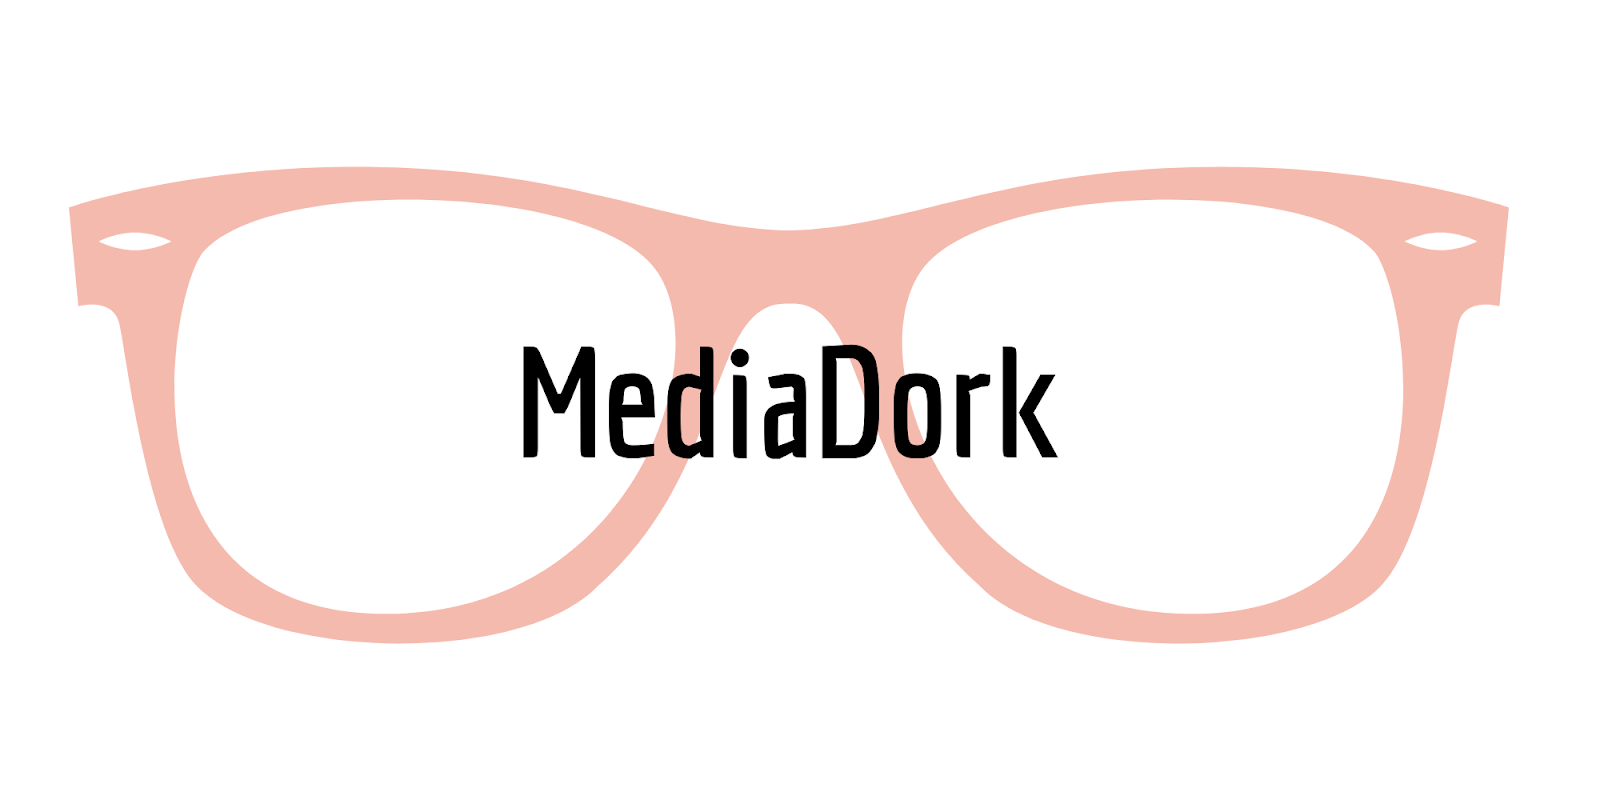 MediaDork